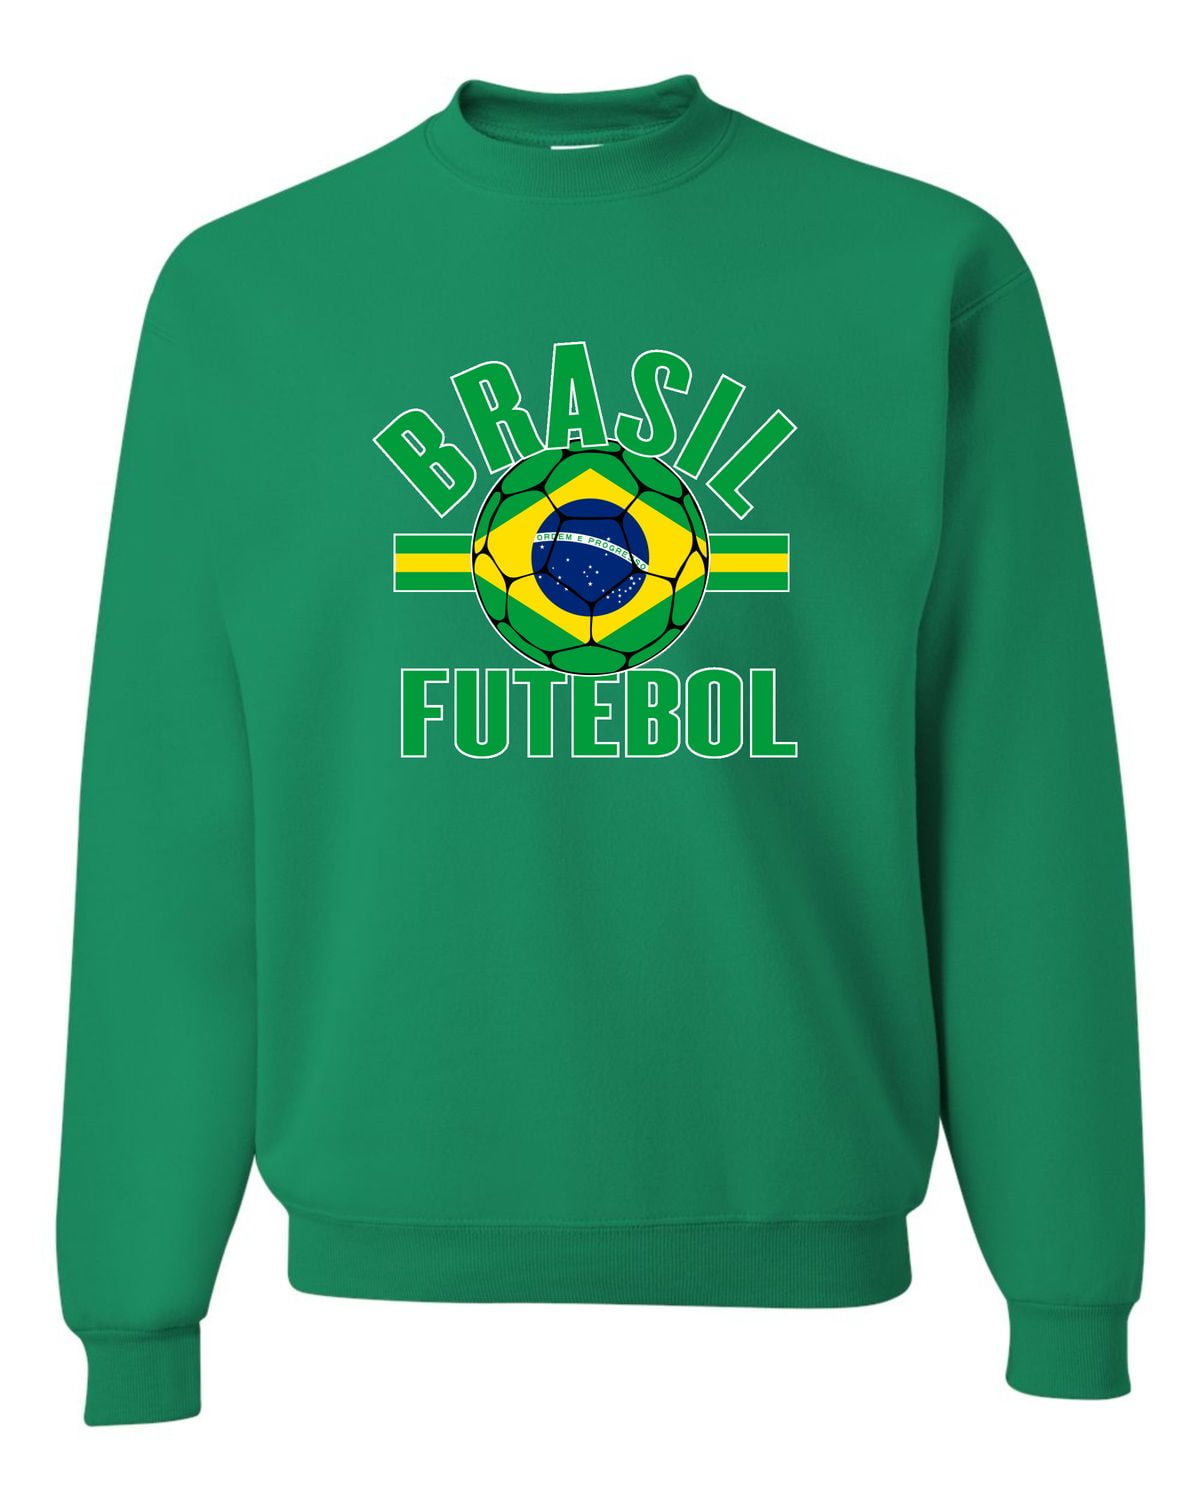 Go All Out Brasil Futebol Brazil Football Soccer Futbol Crewneck Sweatshirt  Mens/Youth 